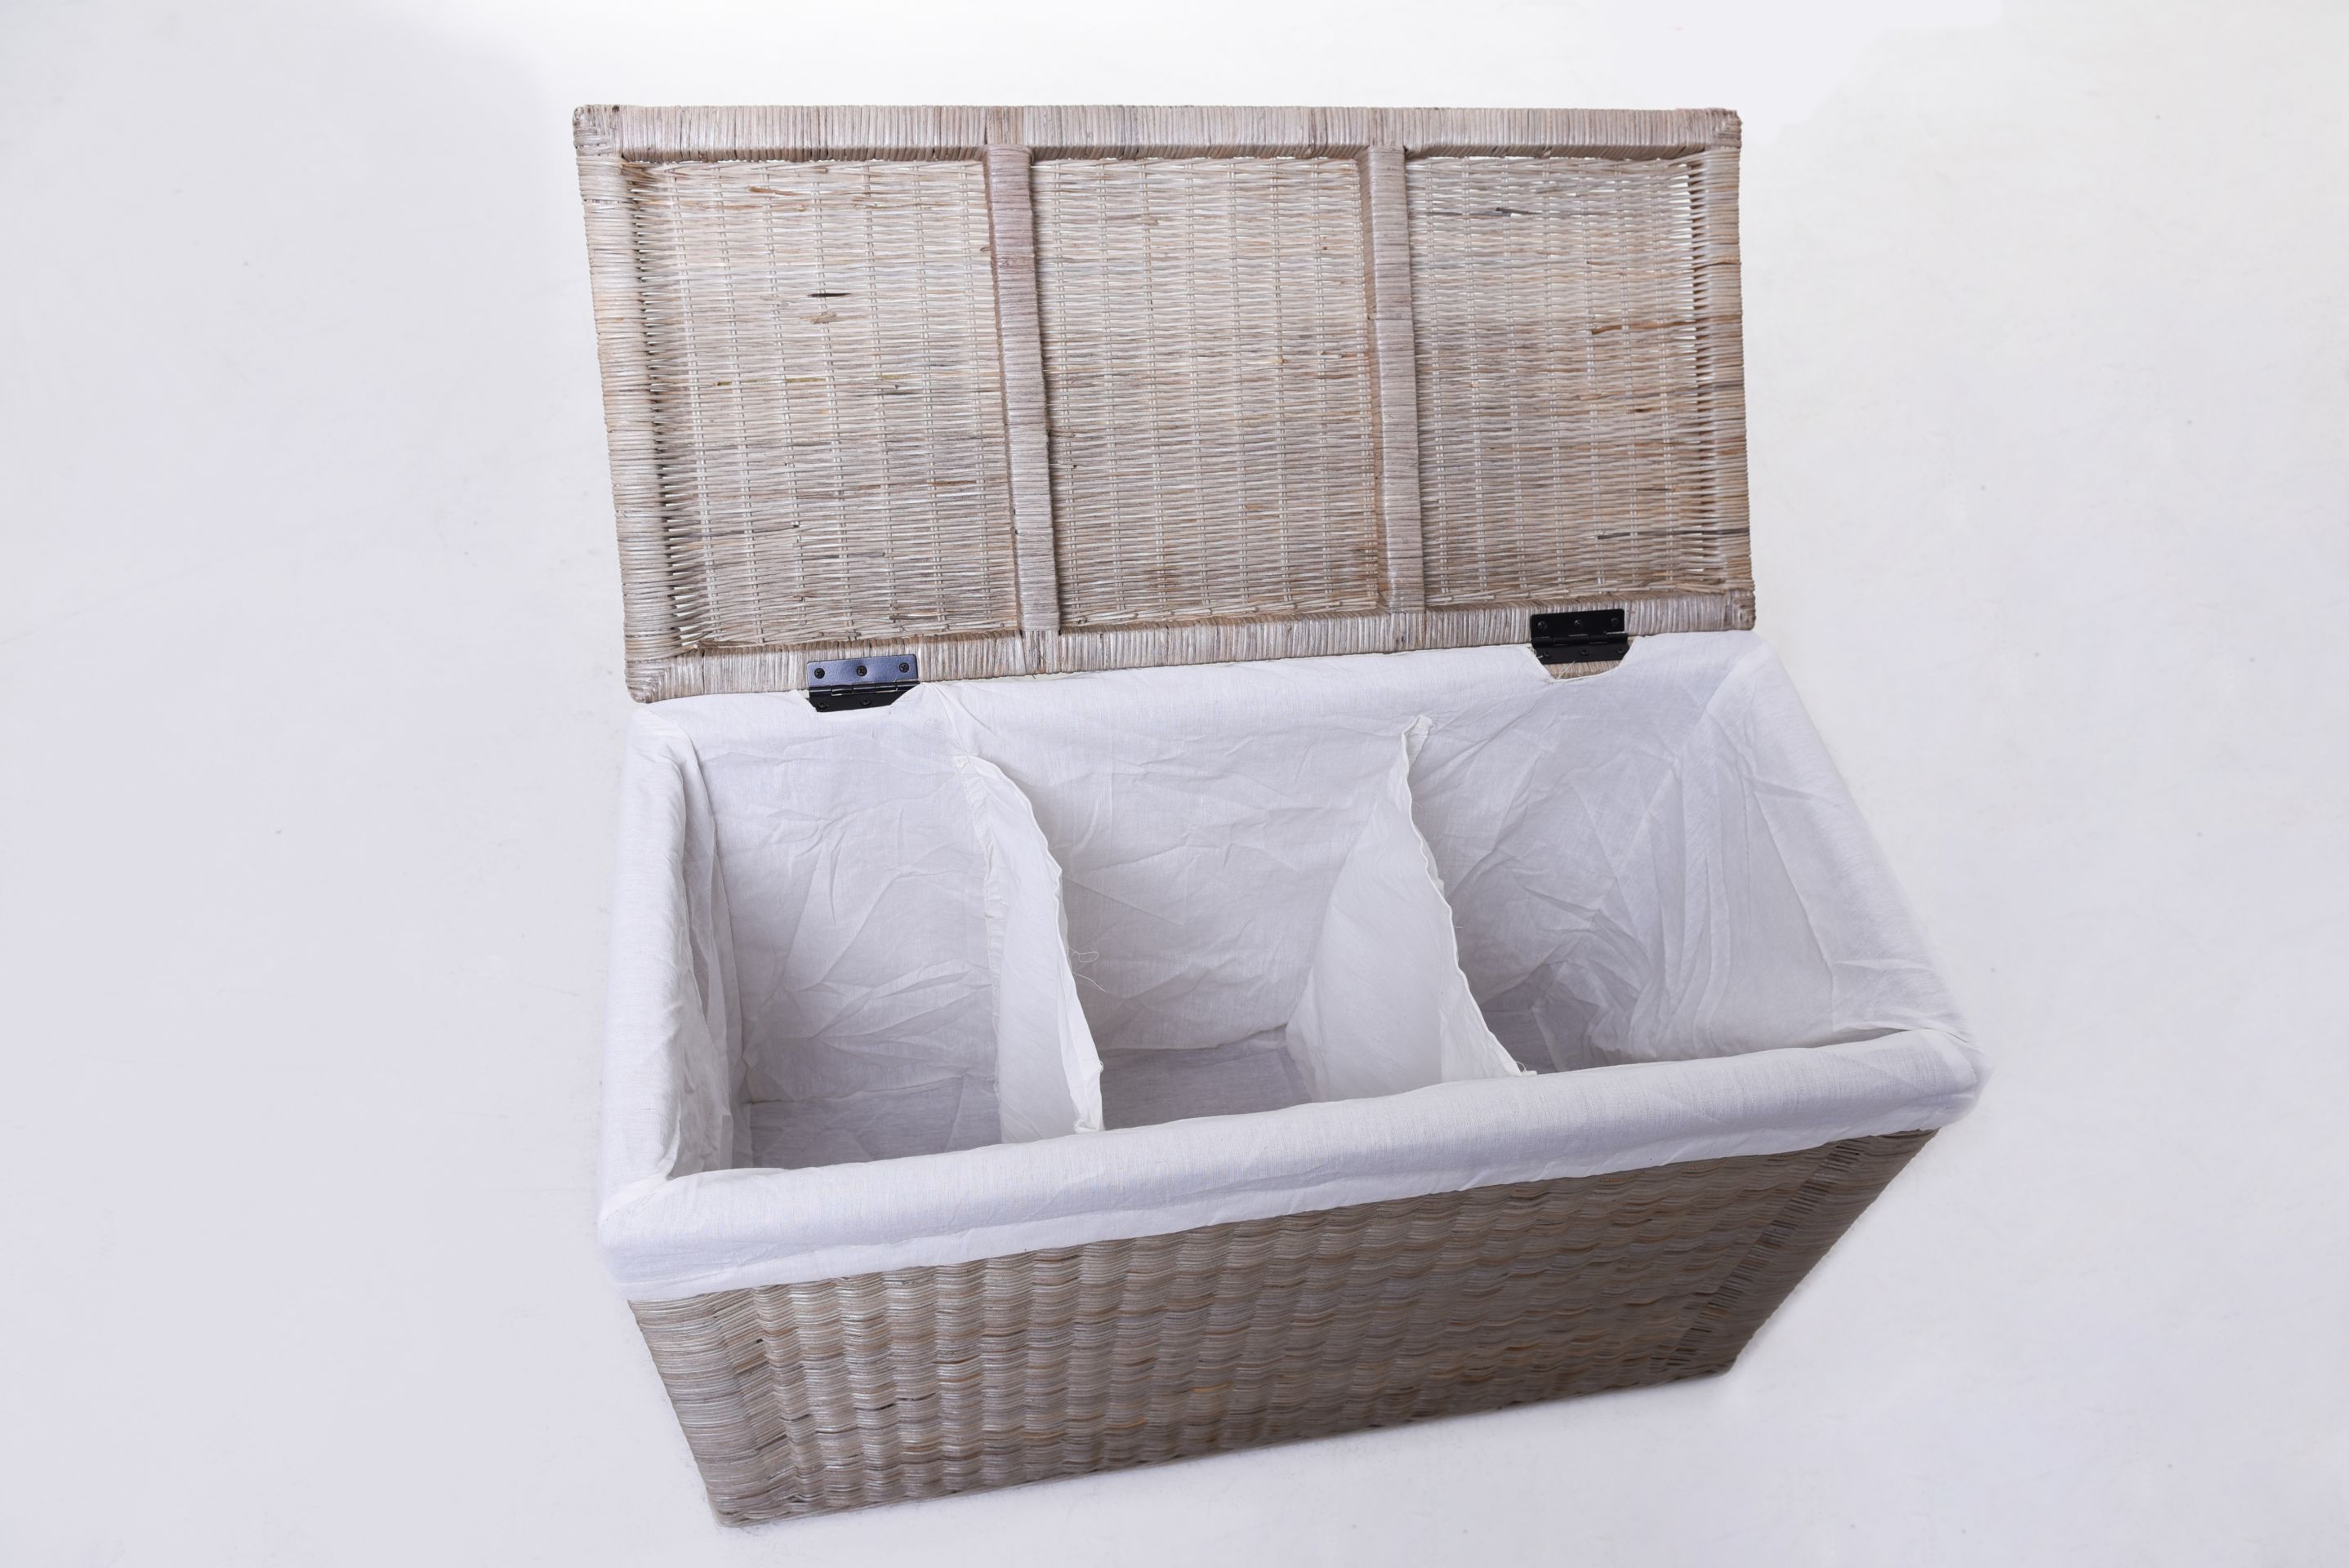 VIVANNO Wäschekorb Wäschebox Wäschesortierer aus Weide 'Grand' 60 cm hoch Weiß 